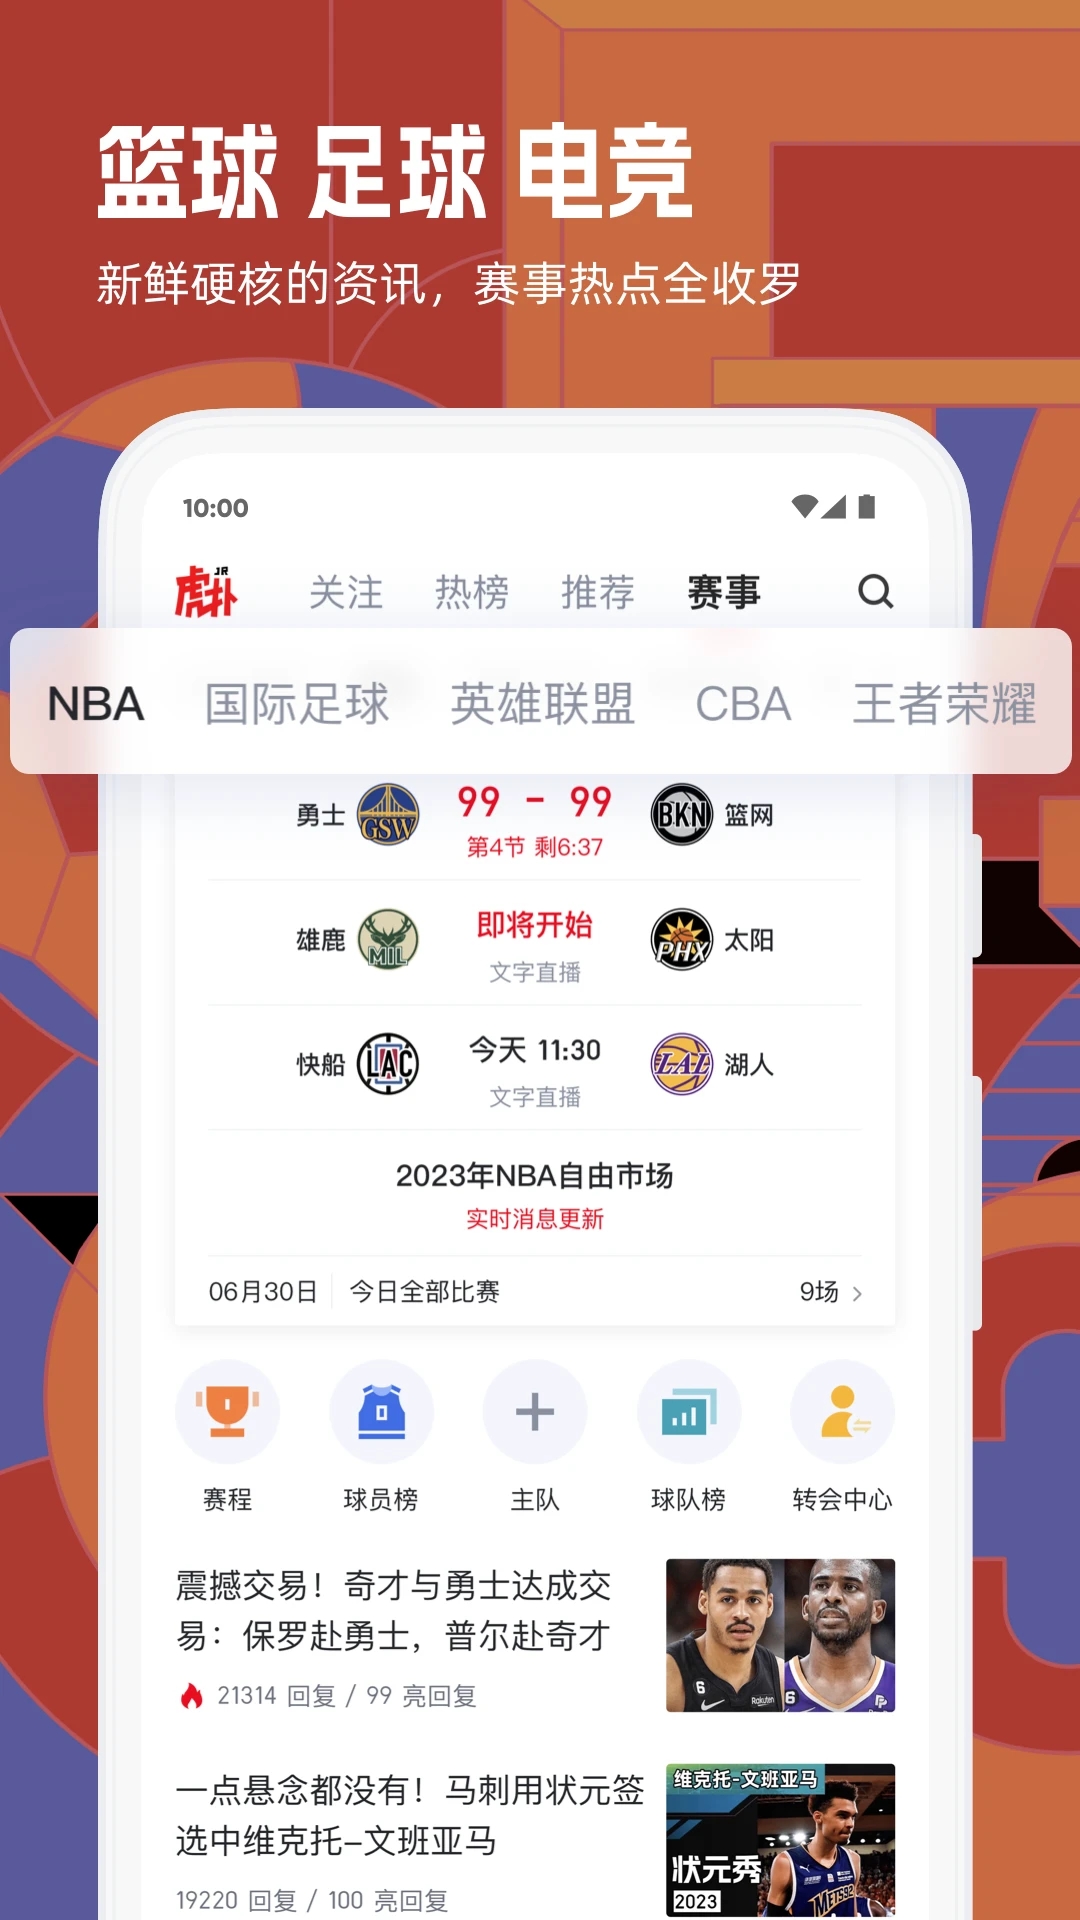 虎扑nba手机版下载安装-虎扑nba是一款能看NBA比赛直播、视频、新闻等内容的软件